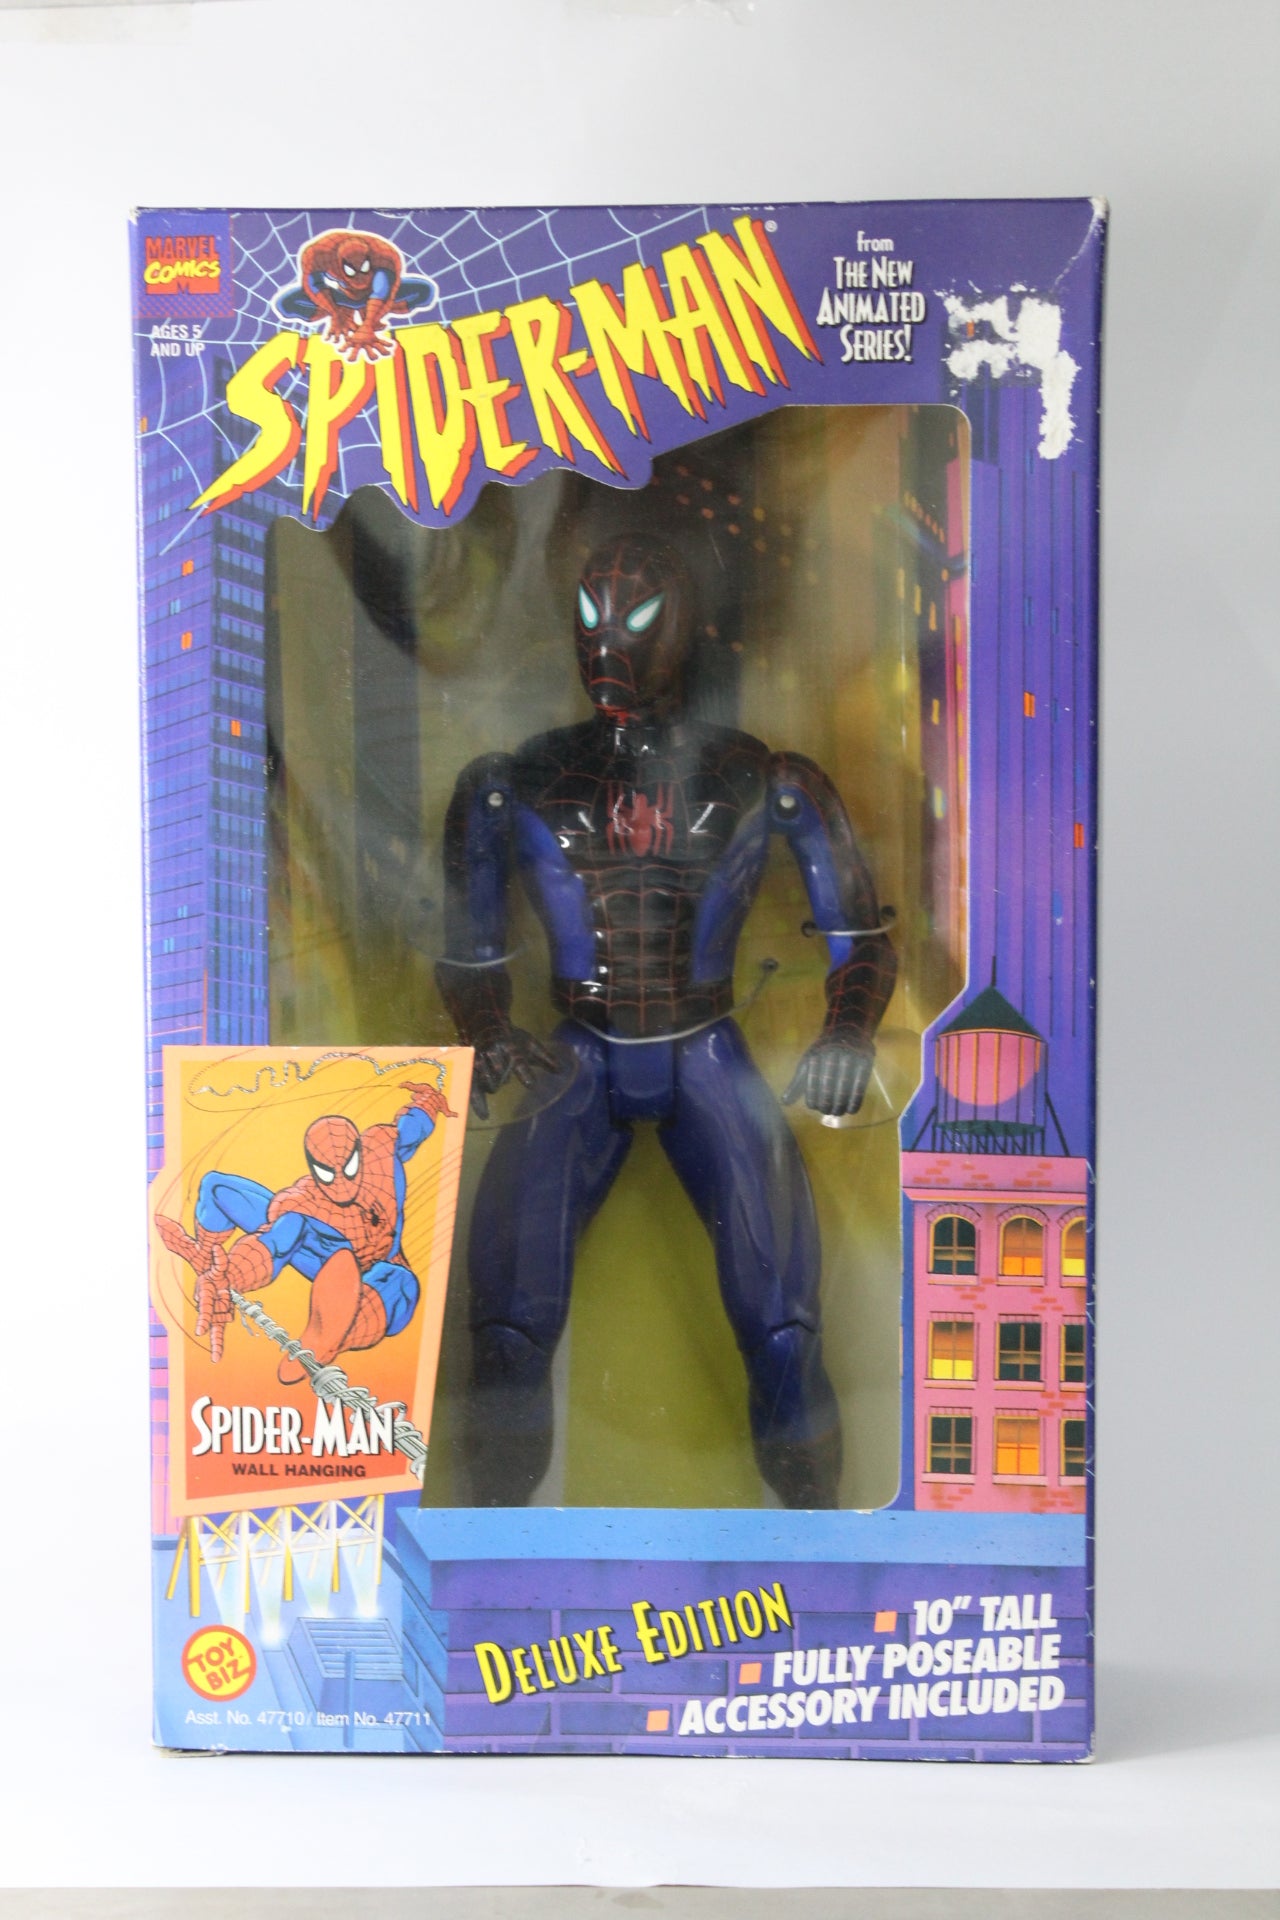 Spider-Man Deluxe Edition Toybiz Vintage